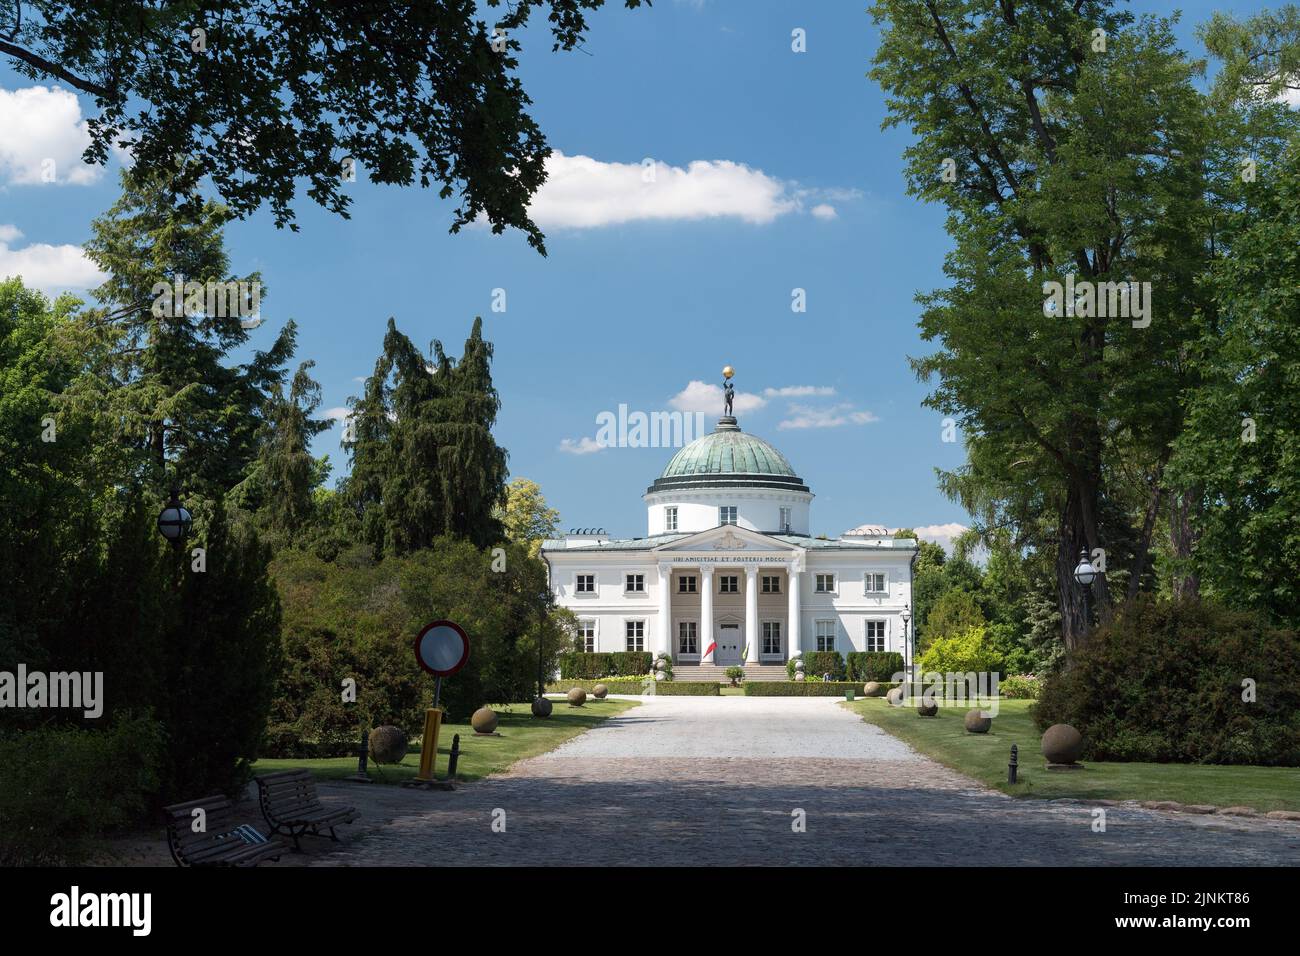 Palacio neoclásico de Stanislaw Zawadzki inspirado en Villa Capra La Rotonda en Vicenza, Italia, en el parque palaciego de paisaje inglés en Lubostron, Polonia Foto de stock